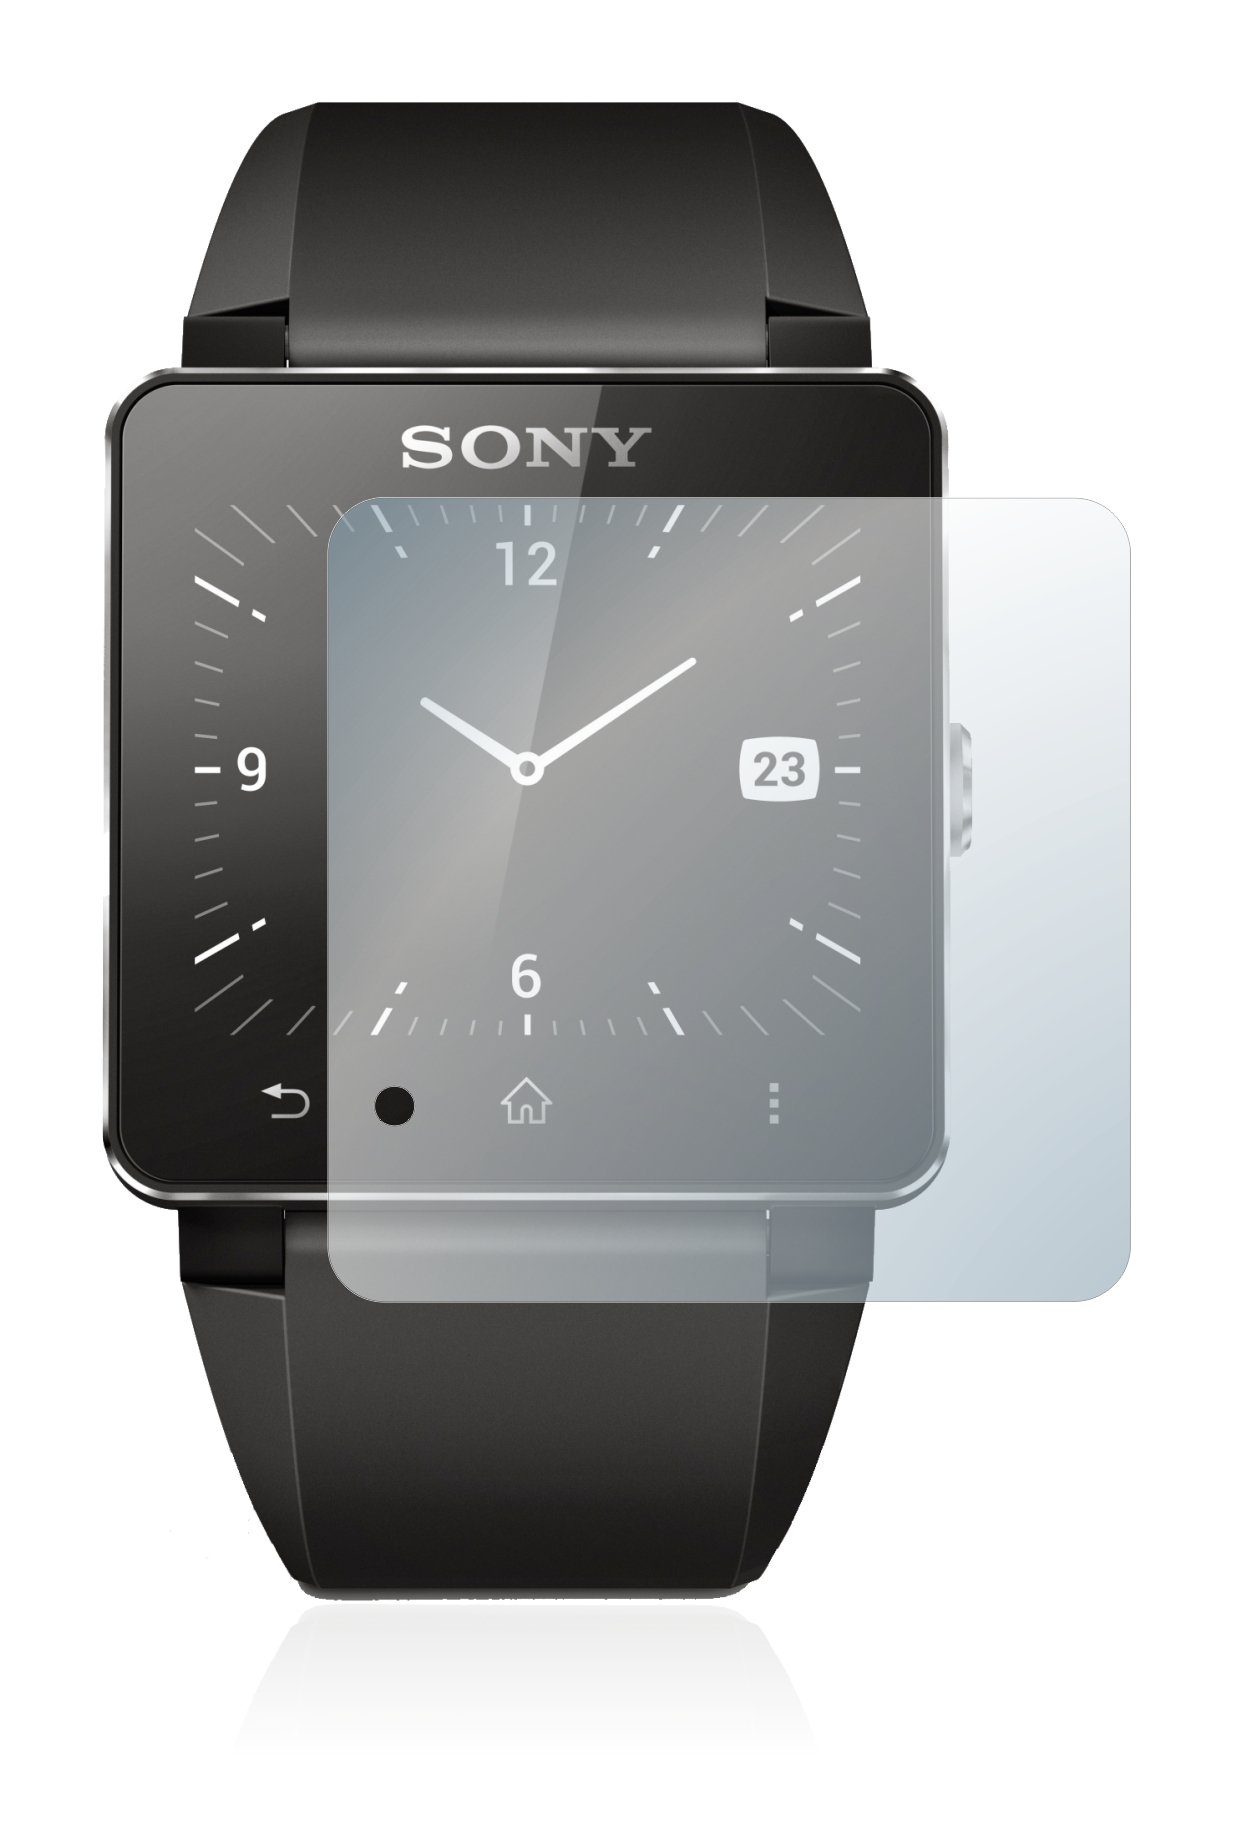 upscreen Schutzfolie »für Sony Smartwatch 2«, Folie Schutzfolie klar  Anti-Scratch Anti-Fingerprint online kaufen | OTTO